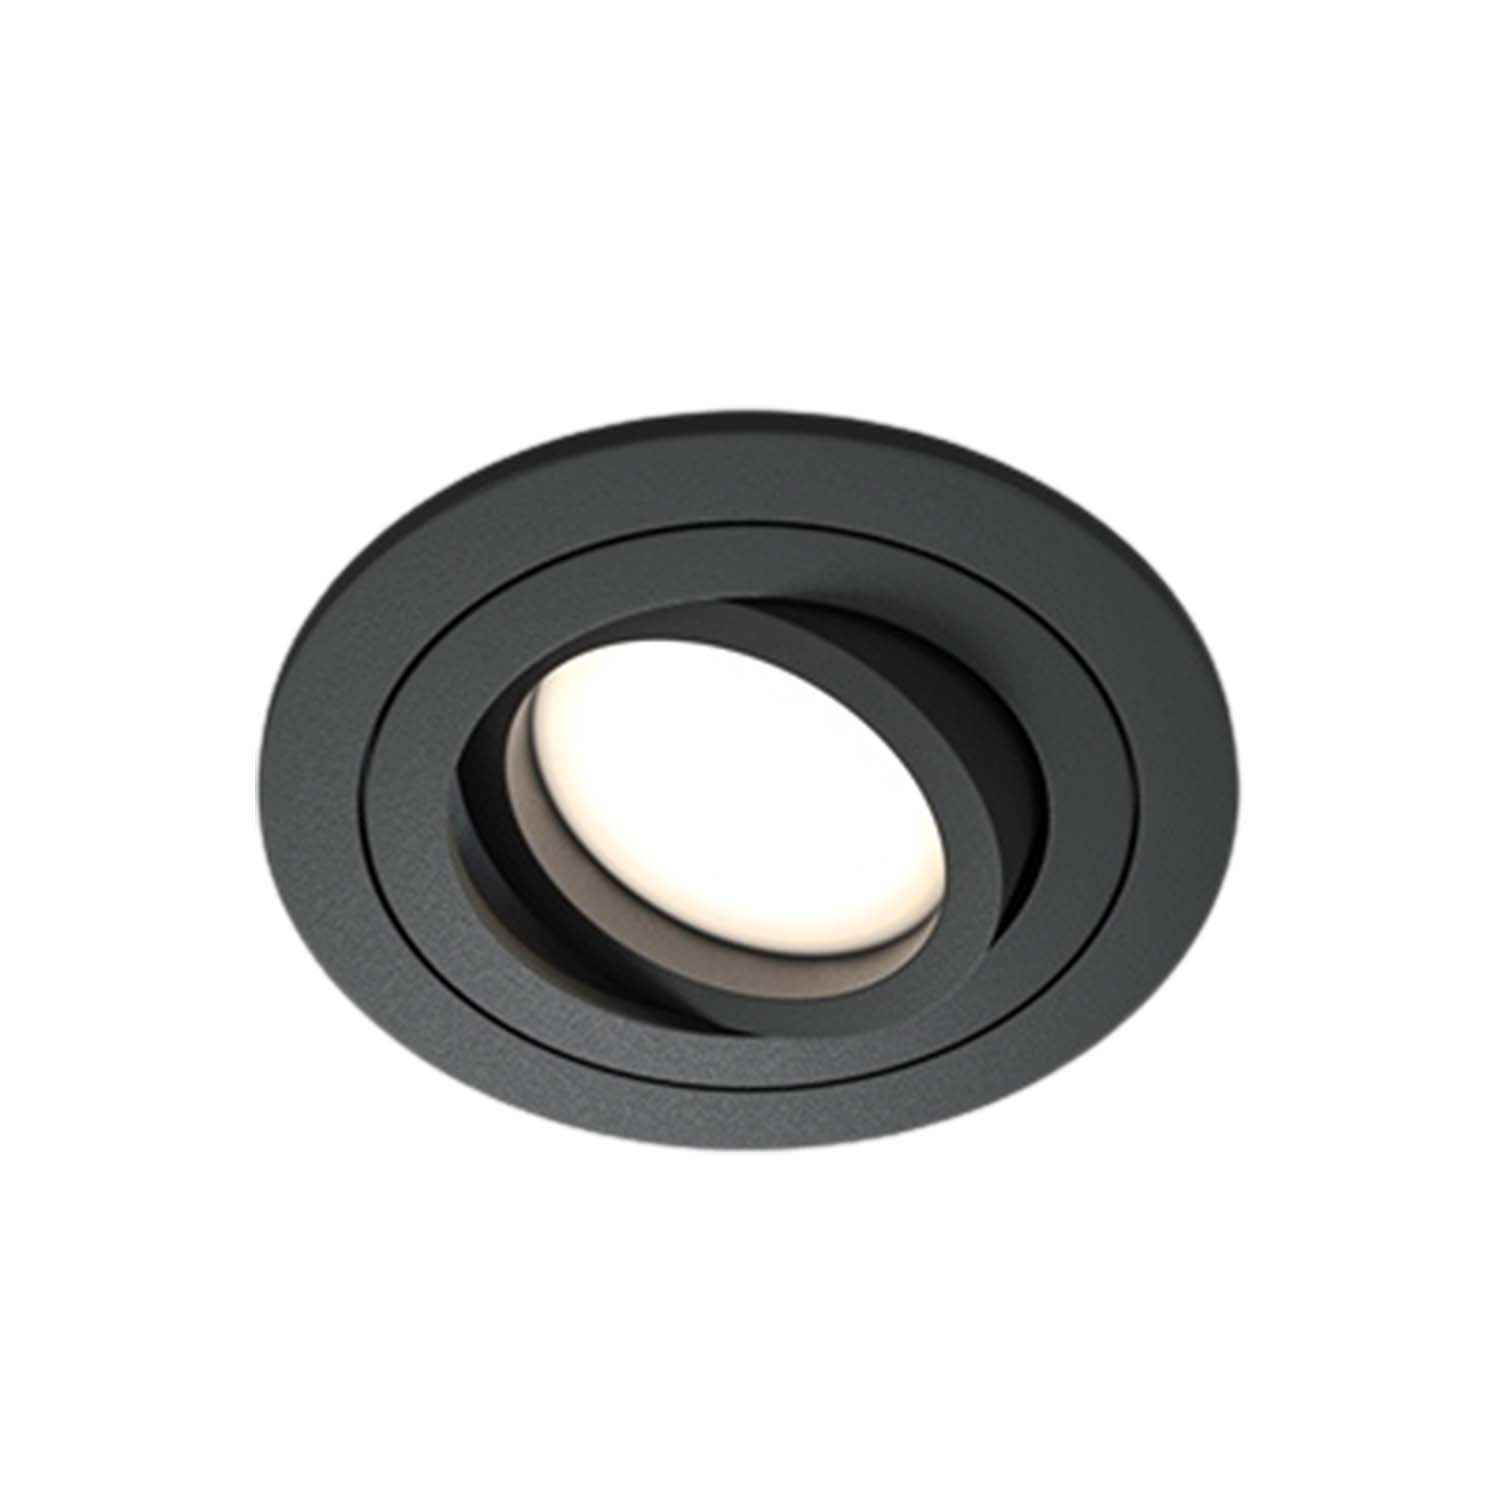 ATOM A – 92 mm runder, schwenkbarer Einbaustrahler in Schwarz oder Weiß